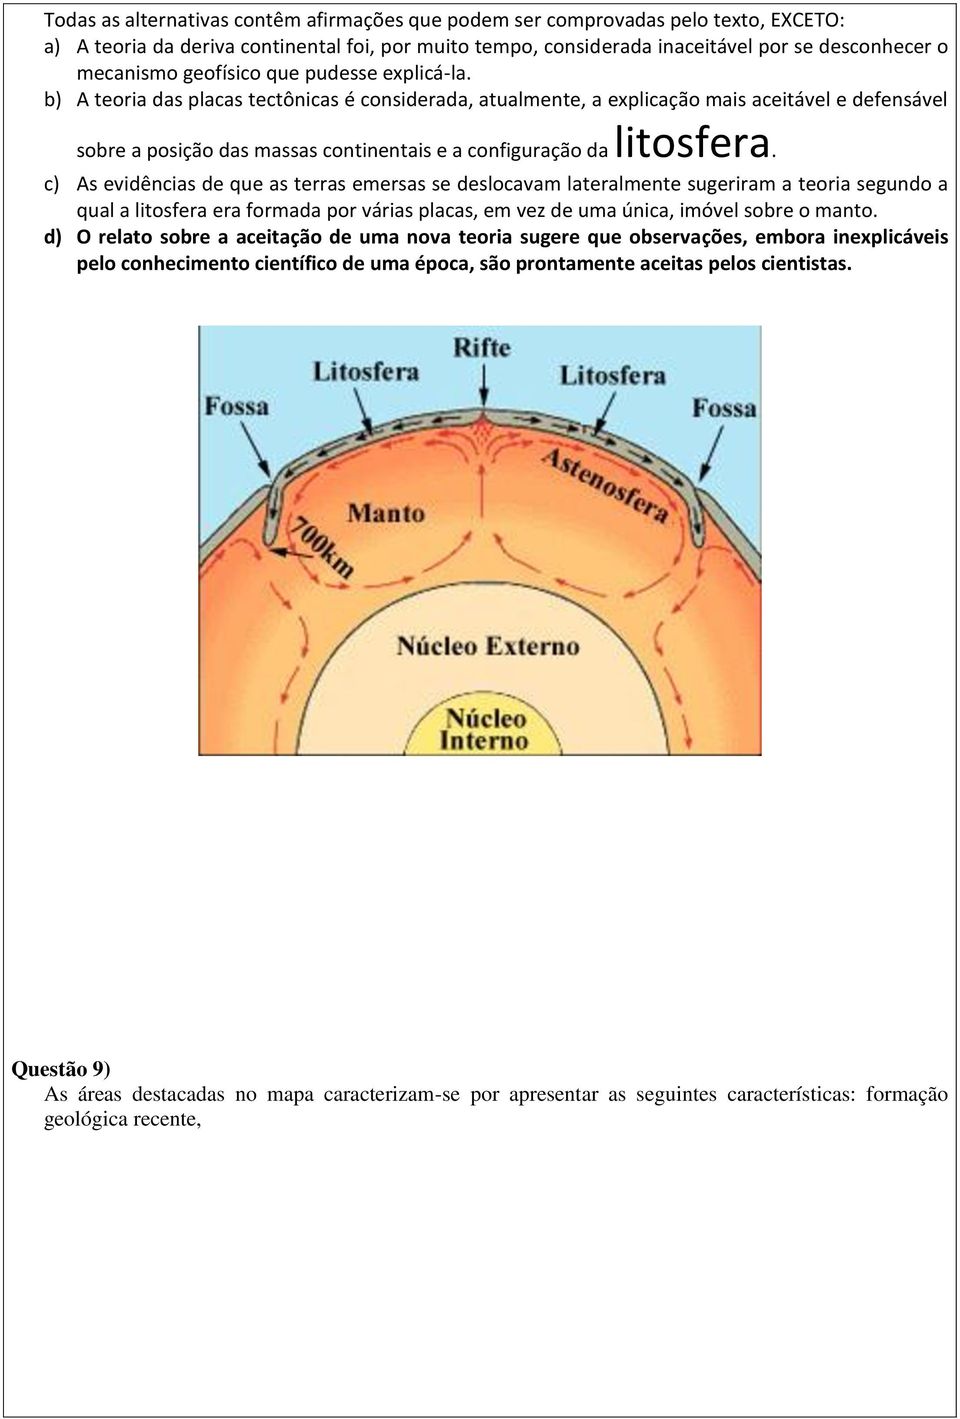 b) A teoria das placas tectônicas é considerada, atualmente, a explicação mais aceitável e defensável sobre a posição das massas continentais e a configuração da litosfera.